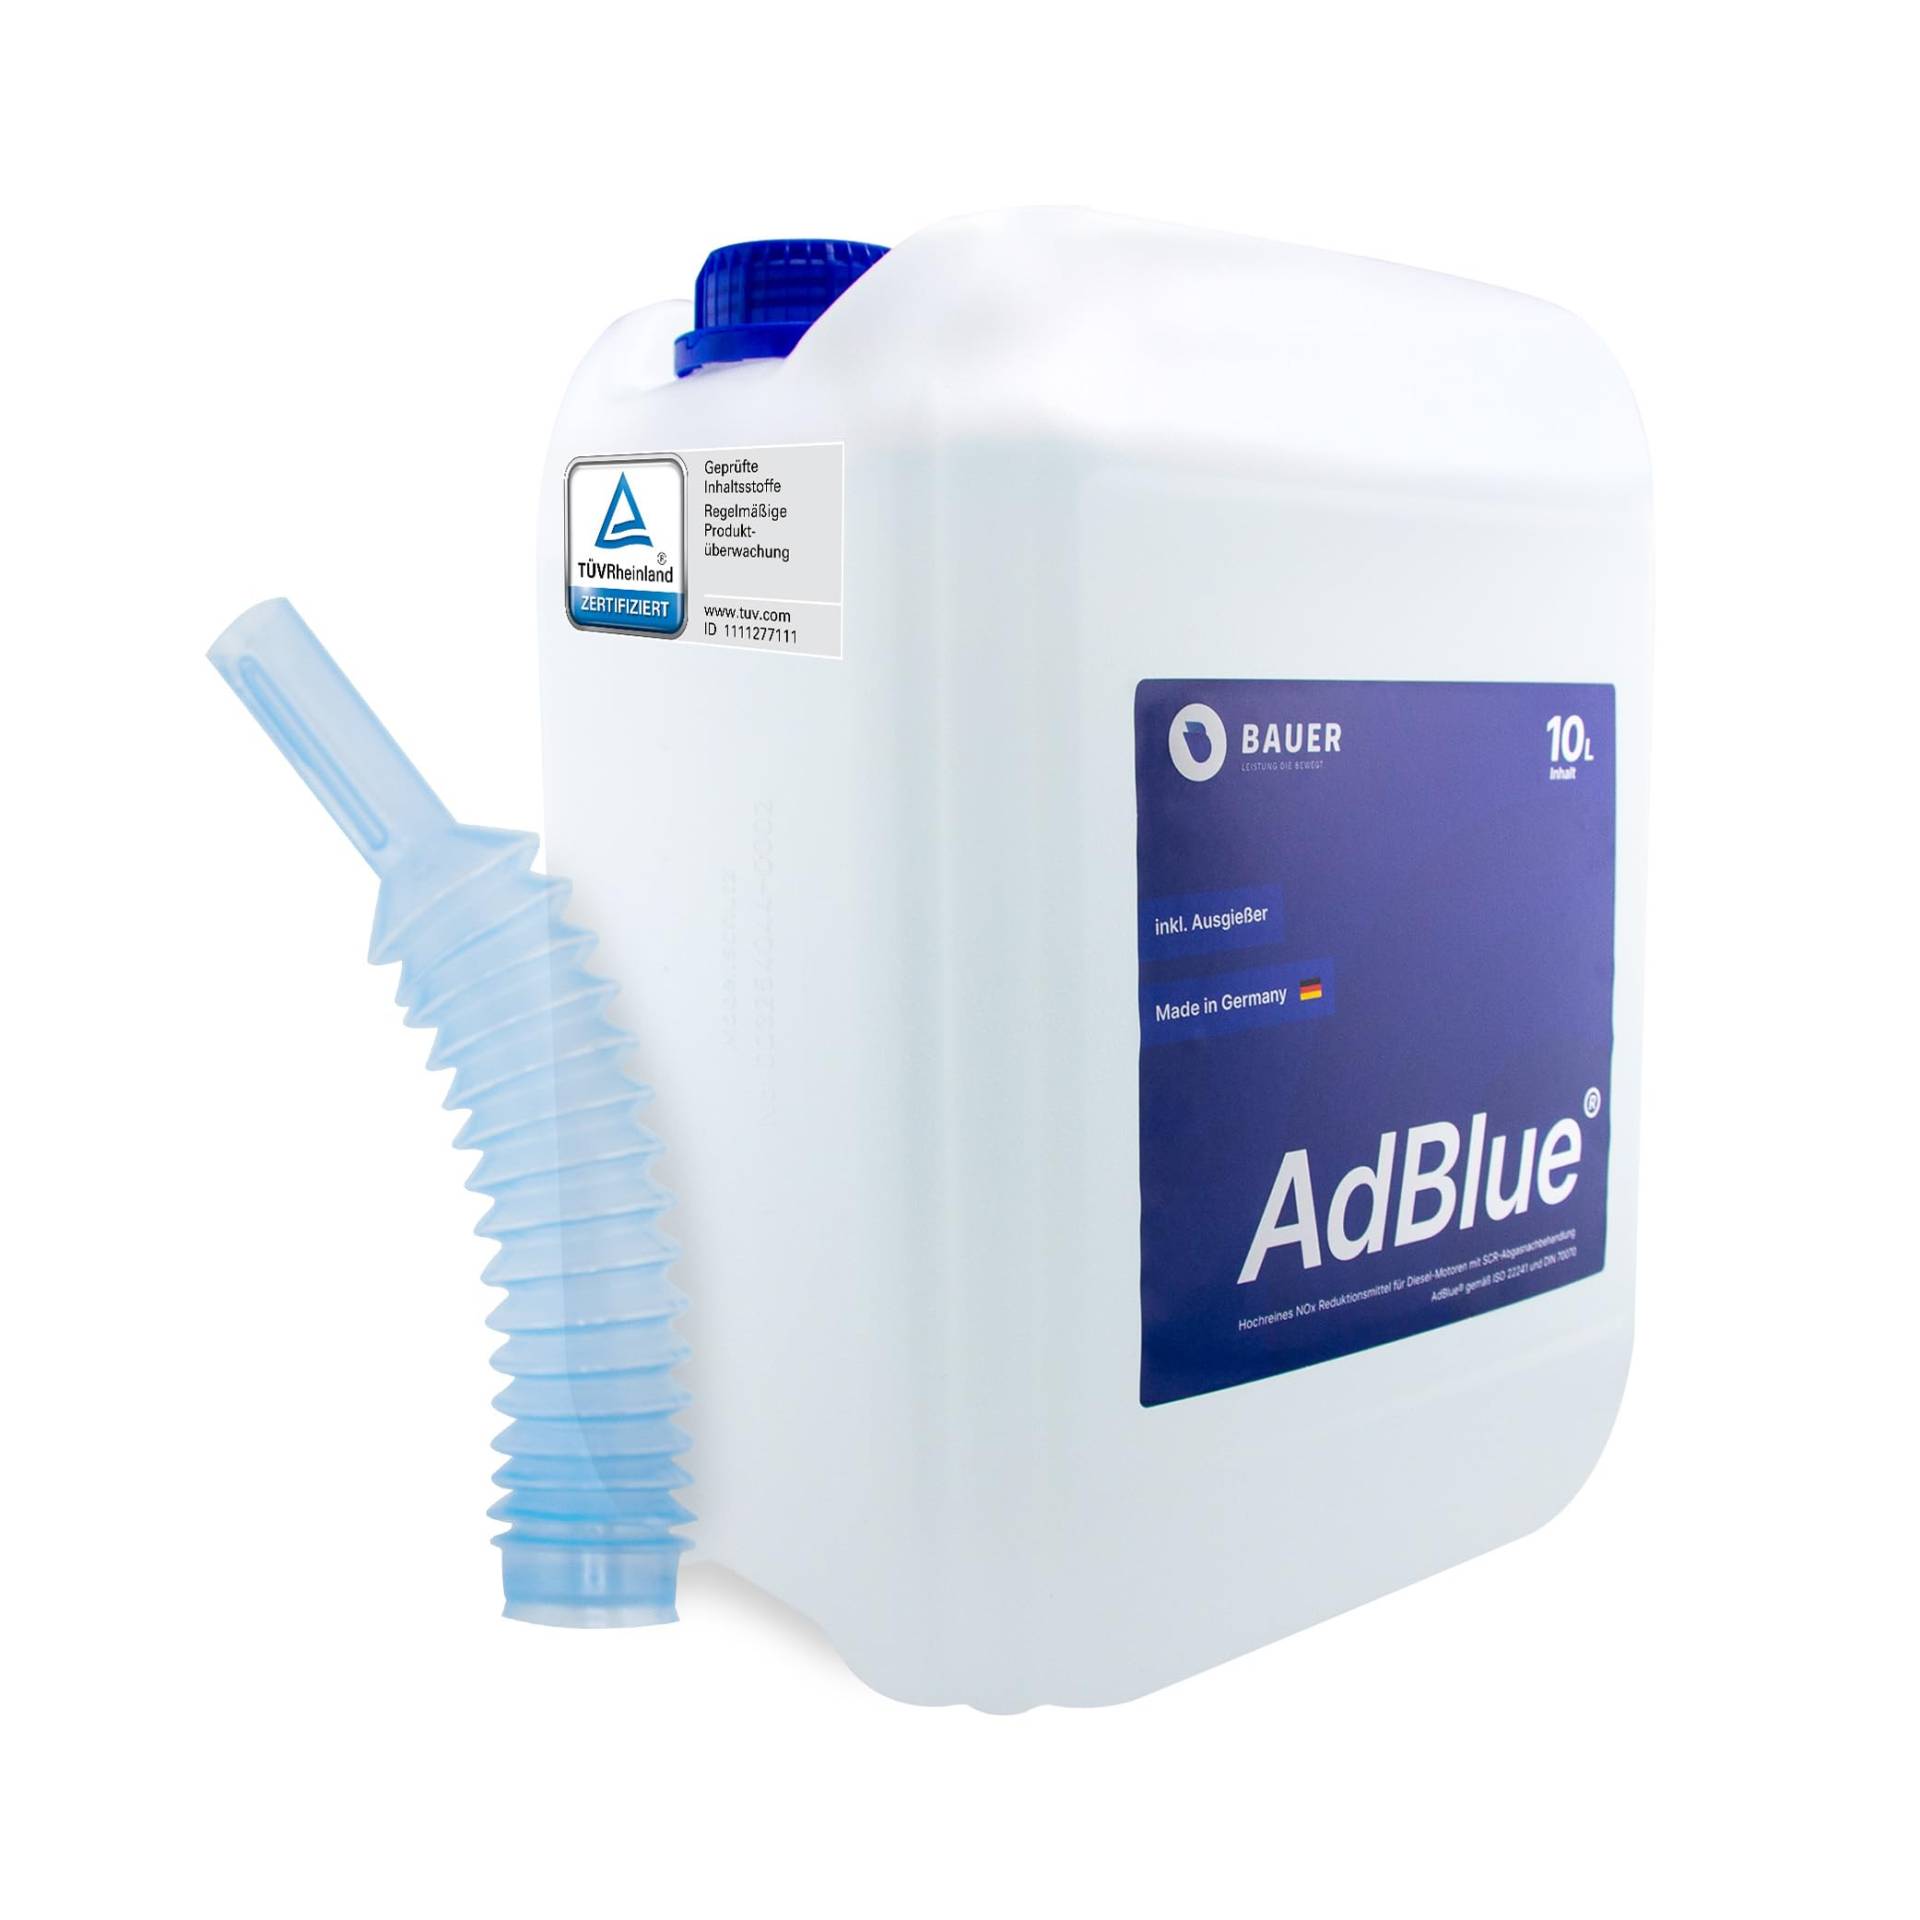 BAUER BLUE AdBlue Sparpaket Premium Harnstofflösung Kanister mit Flex-Ausgießer für Diesel-Motoren, ISO 22241 Konform – Optimale SCR-Abgasnachbehandlung, Made in Germany (10 Liter) von Bauer Blue